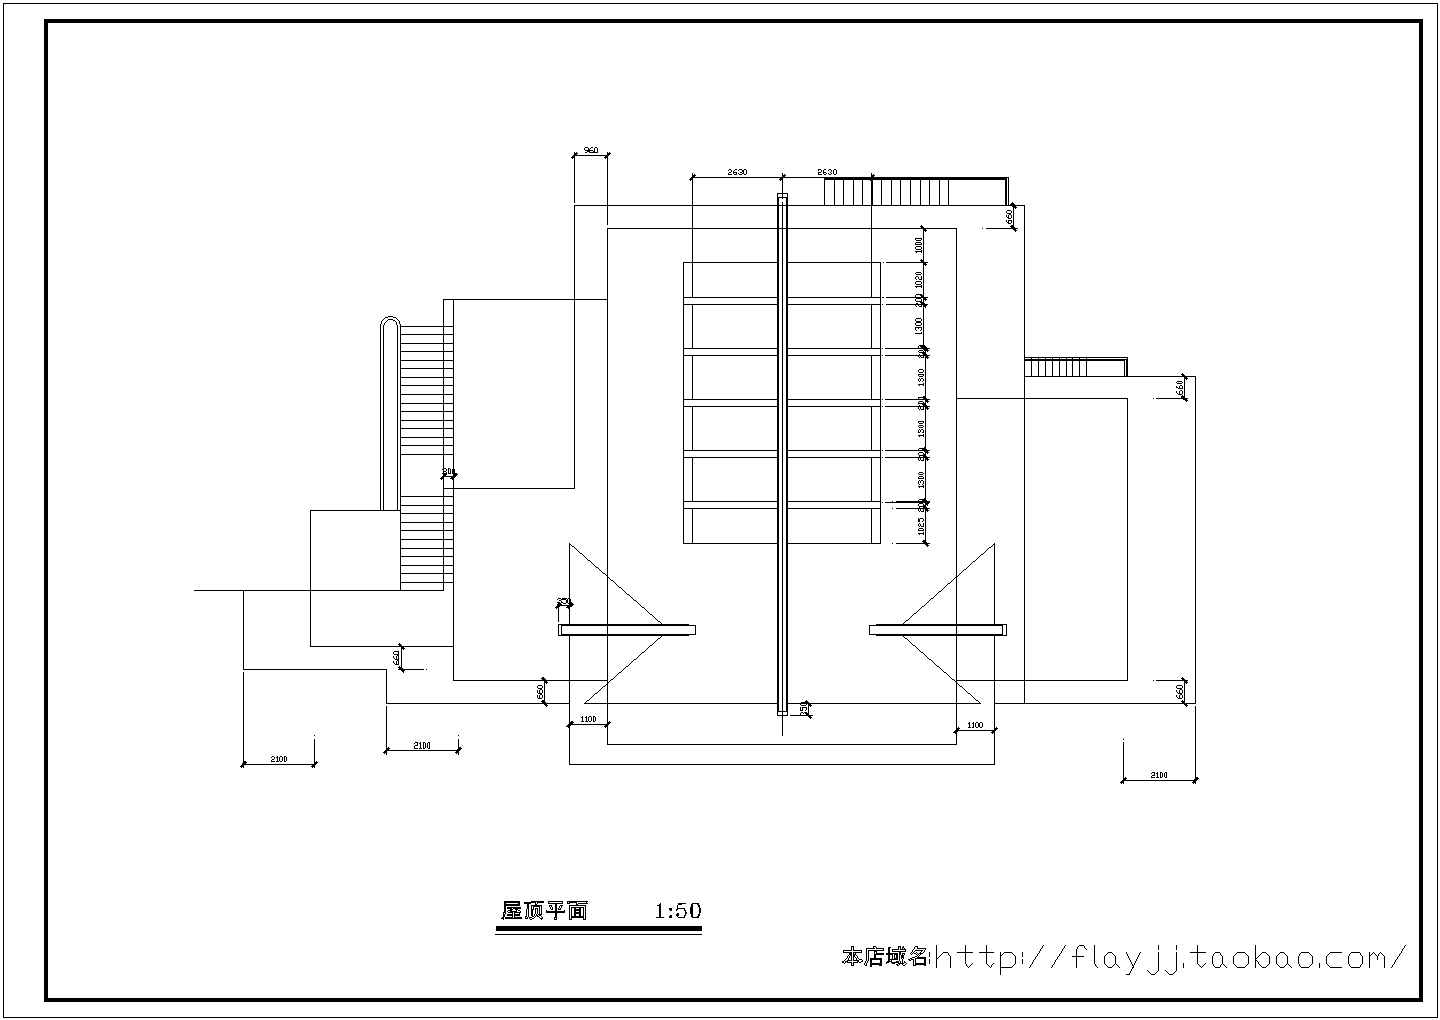 某长13.5米 宽7.5米 二层索道上部站茶室CAD建筑构造完整设计图